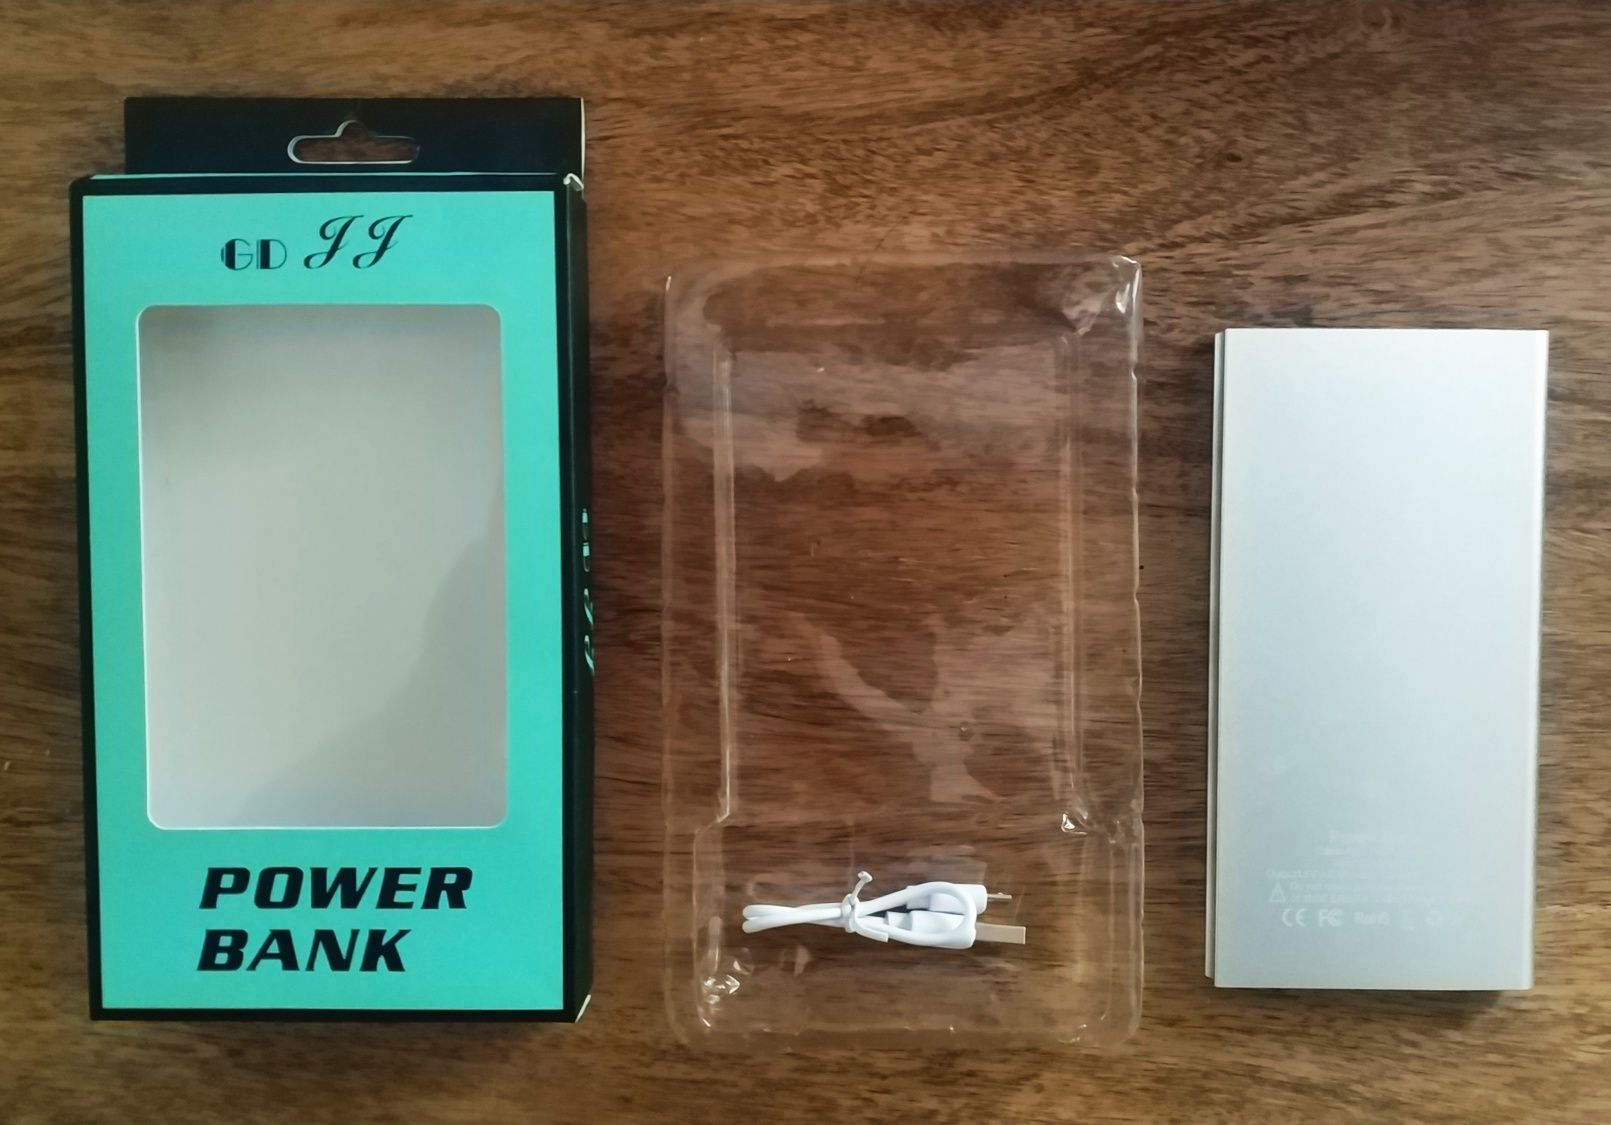 Power Bank Aluminiowy DUŻY, 2 wyjścia USB, NOWY!